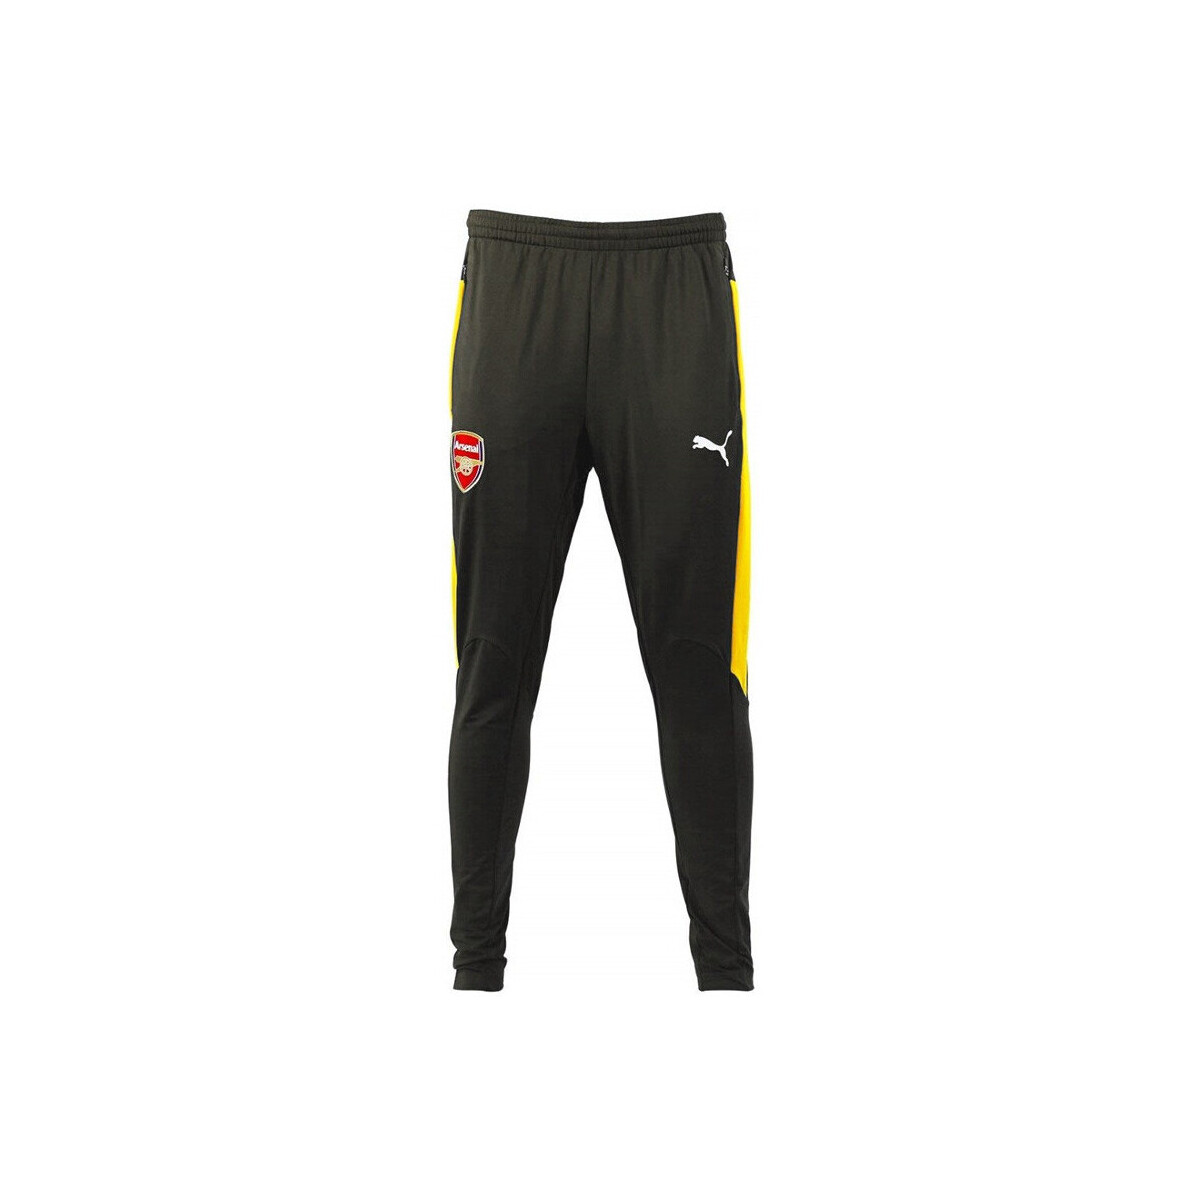 Vêtements Homme Pantalons de survêtement Puma Arsenal FC Training 2016/2017 - 7519 Gris